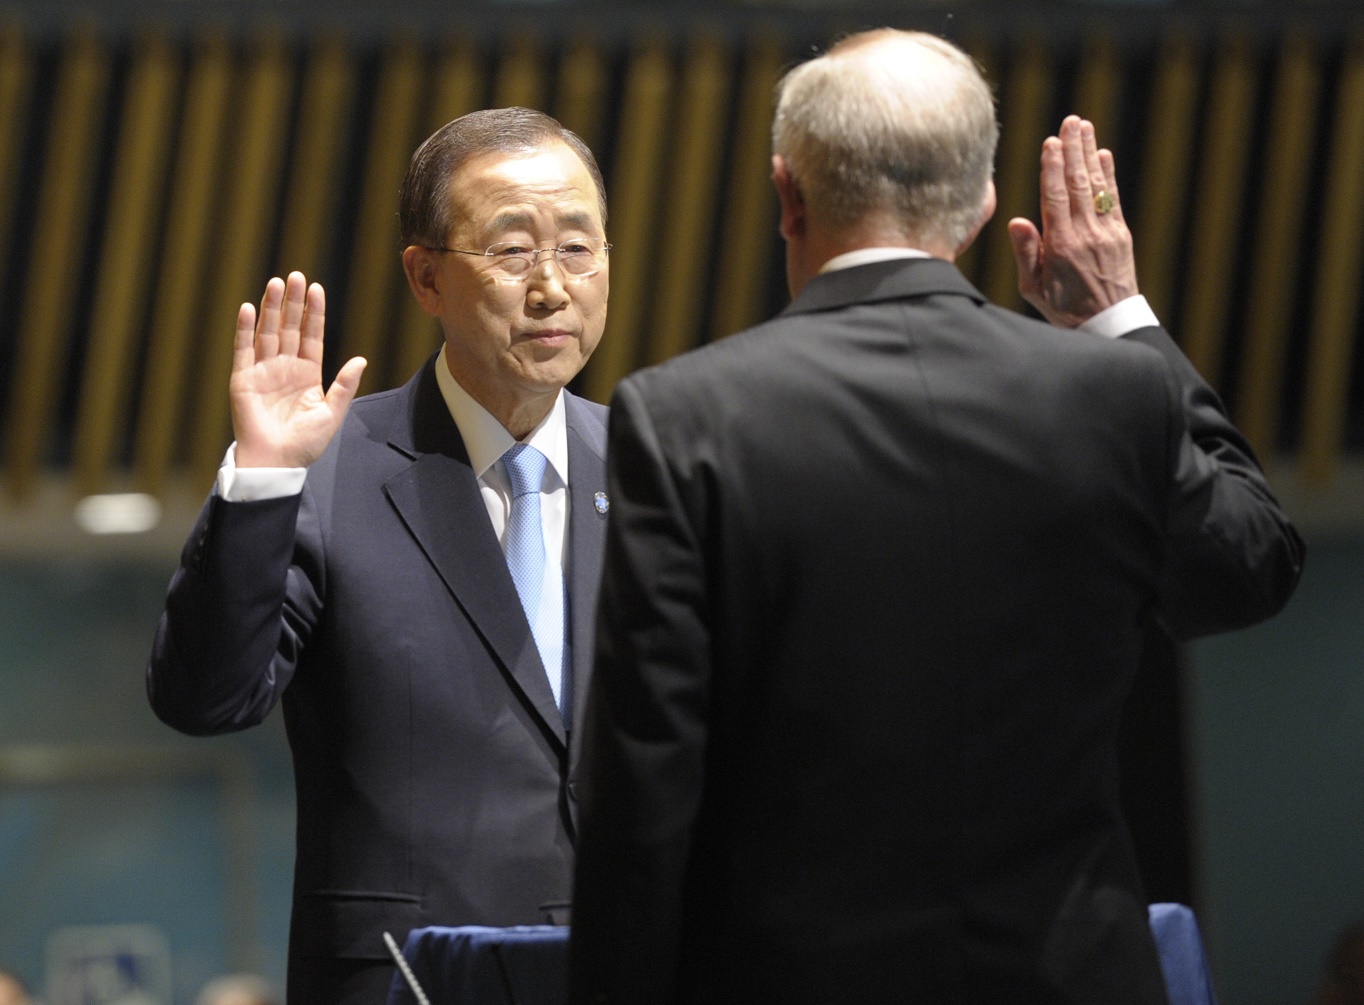 Choisir un nouveau Secrétaire général de l’ONU qui défendra les droits humains